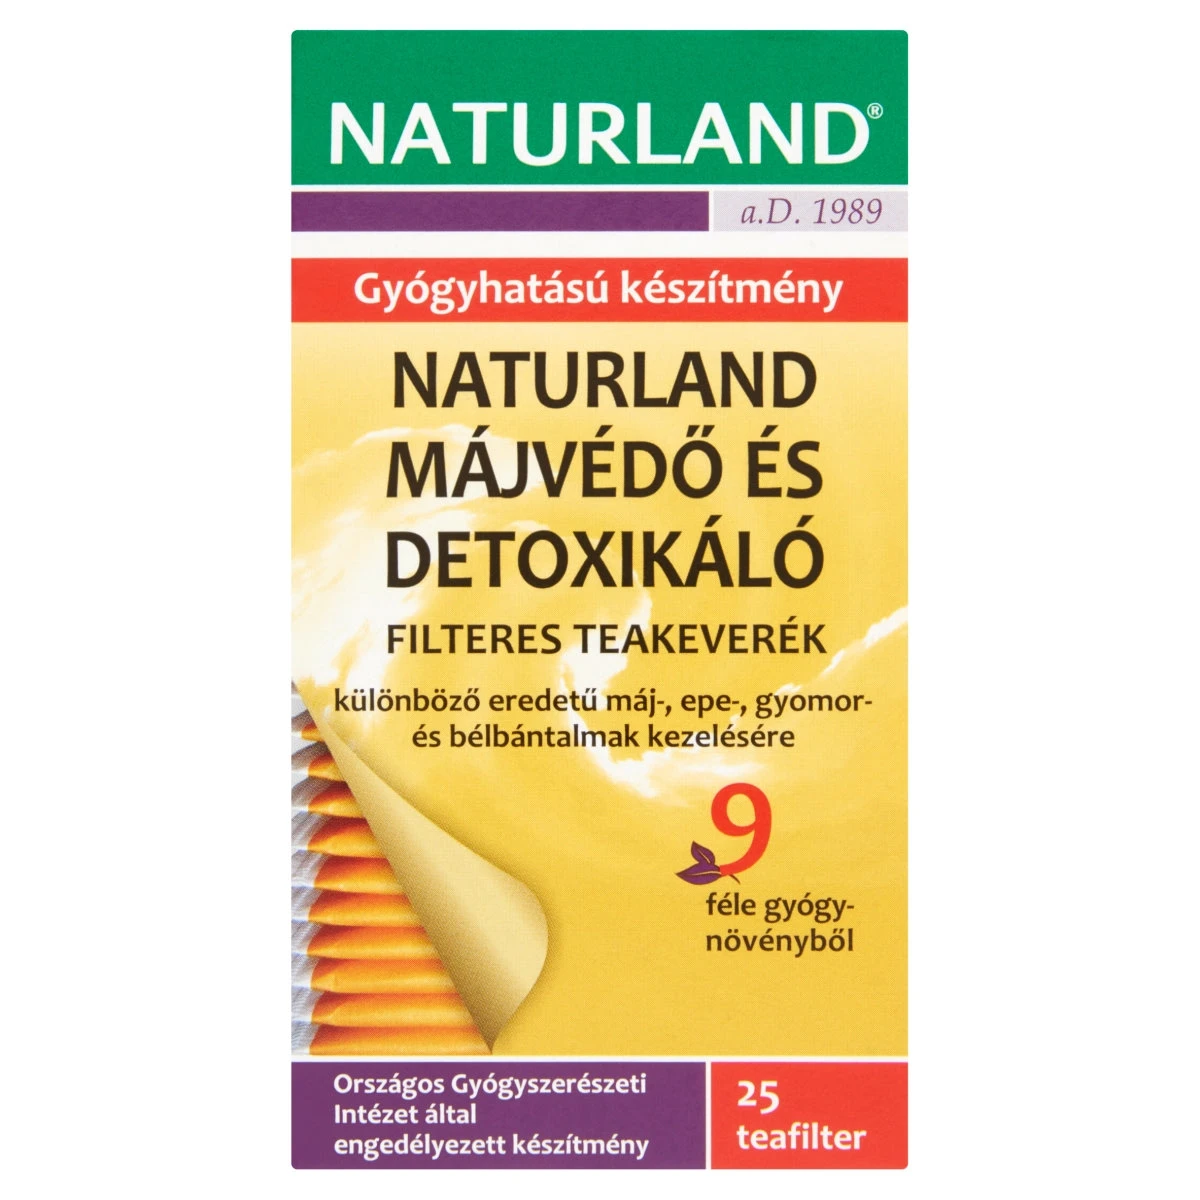 Naturland Májvédő és detoxikáló filteres teakeverék